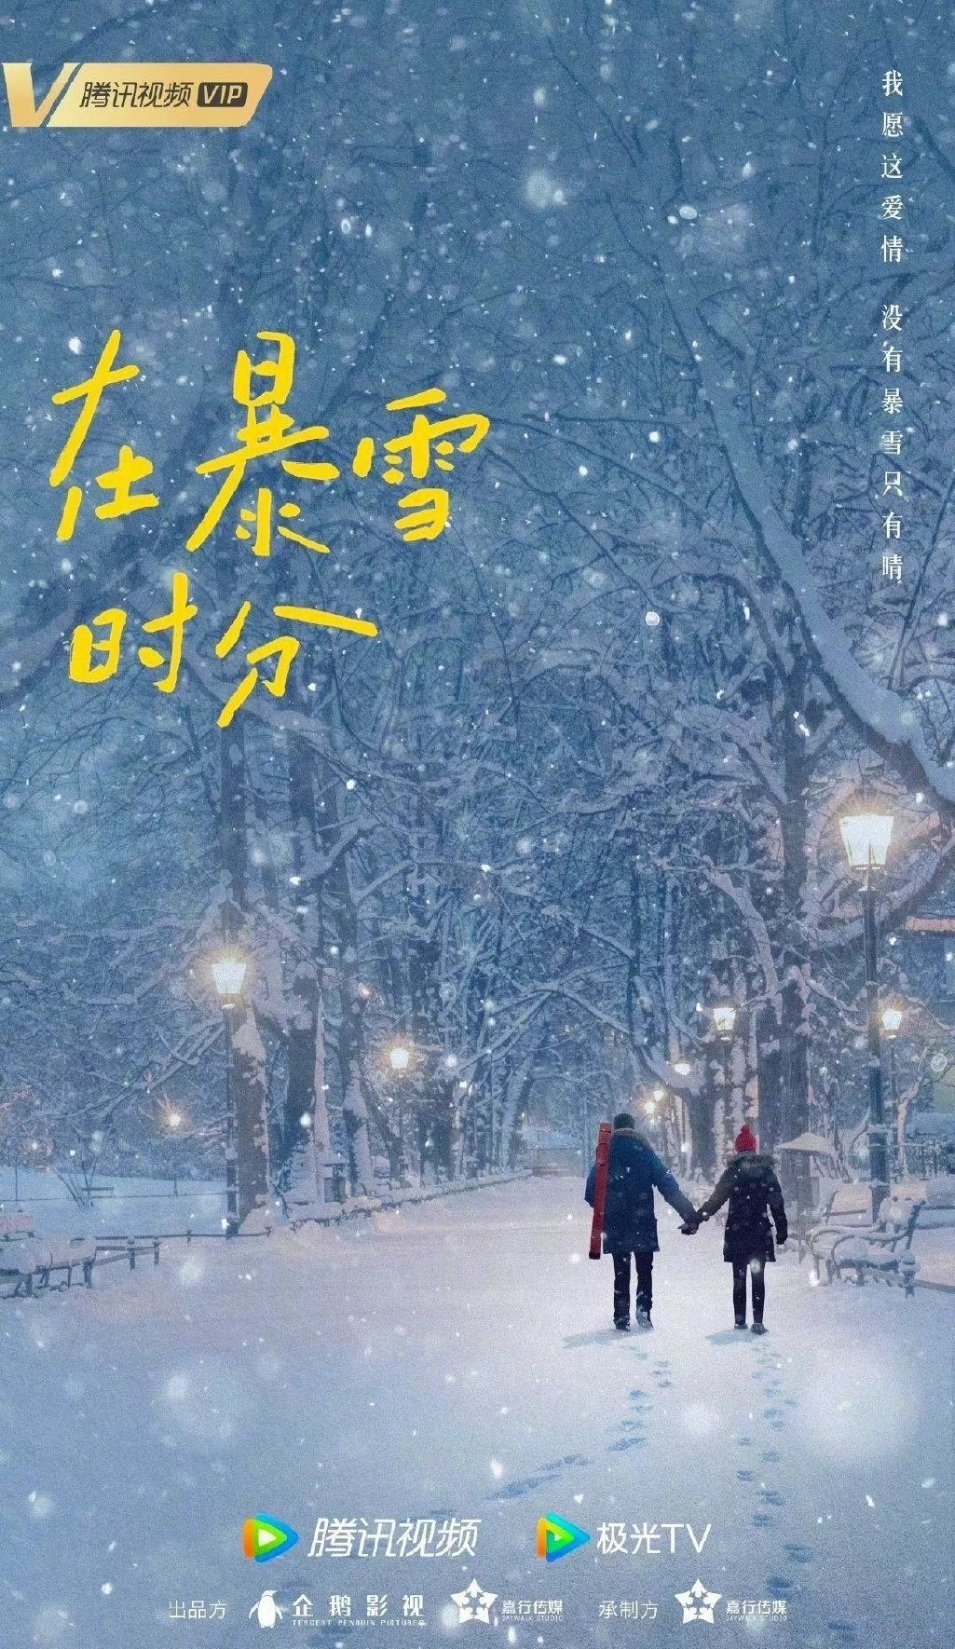 'Giữa cơn bão tuyết' đổi đạo diễn, Ngô Lỗi và Triệu Kim Mạch chuẩn bị lên hương?